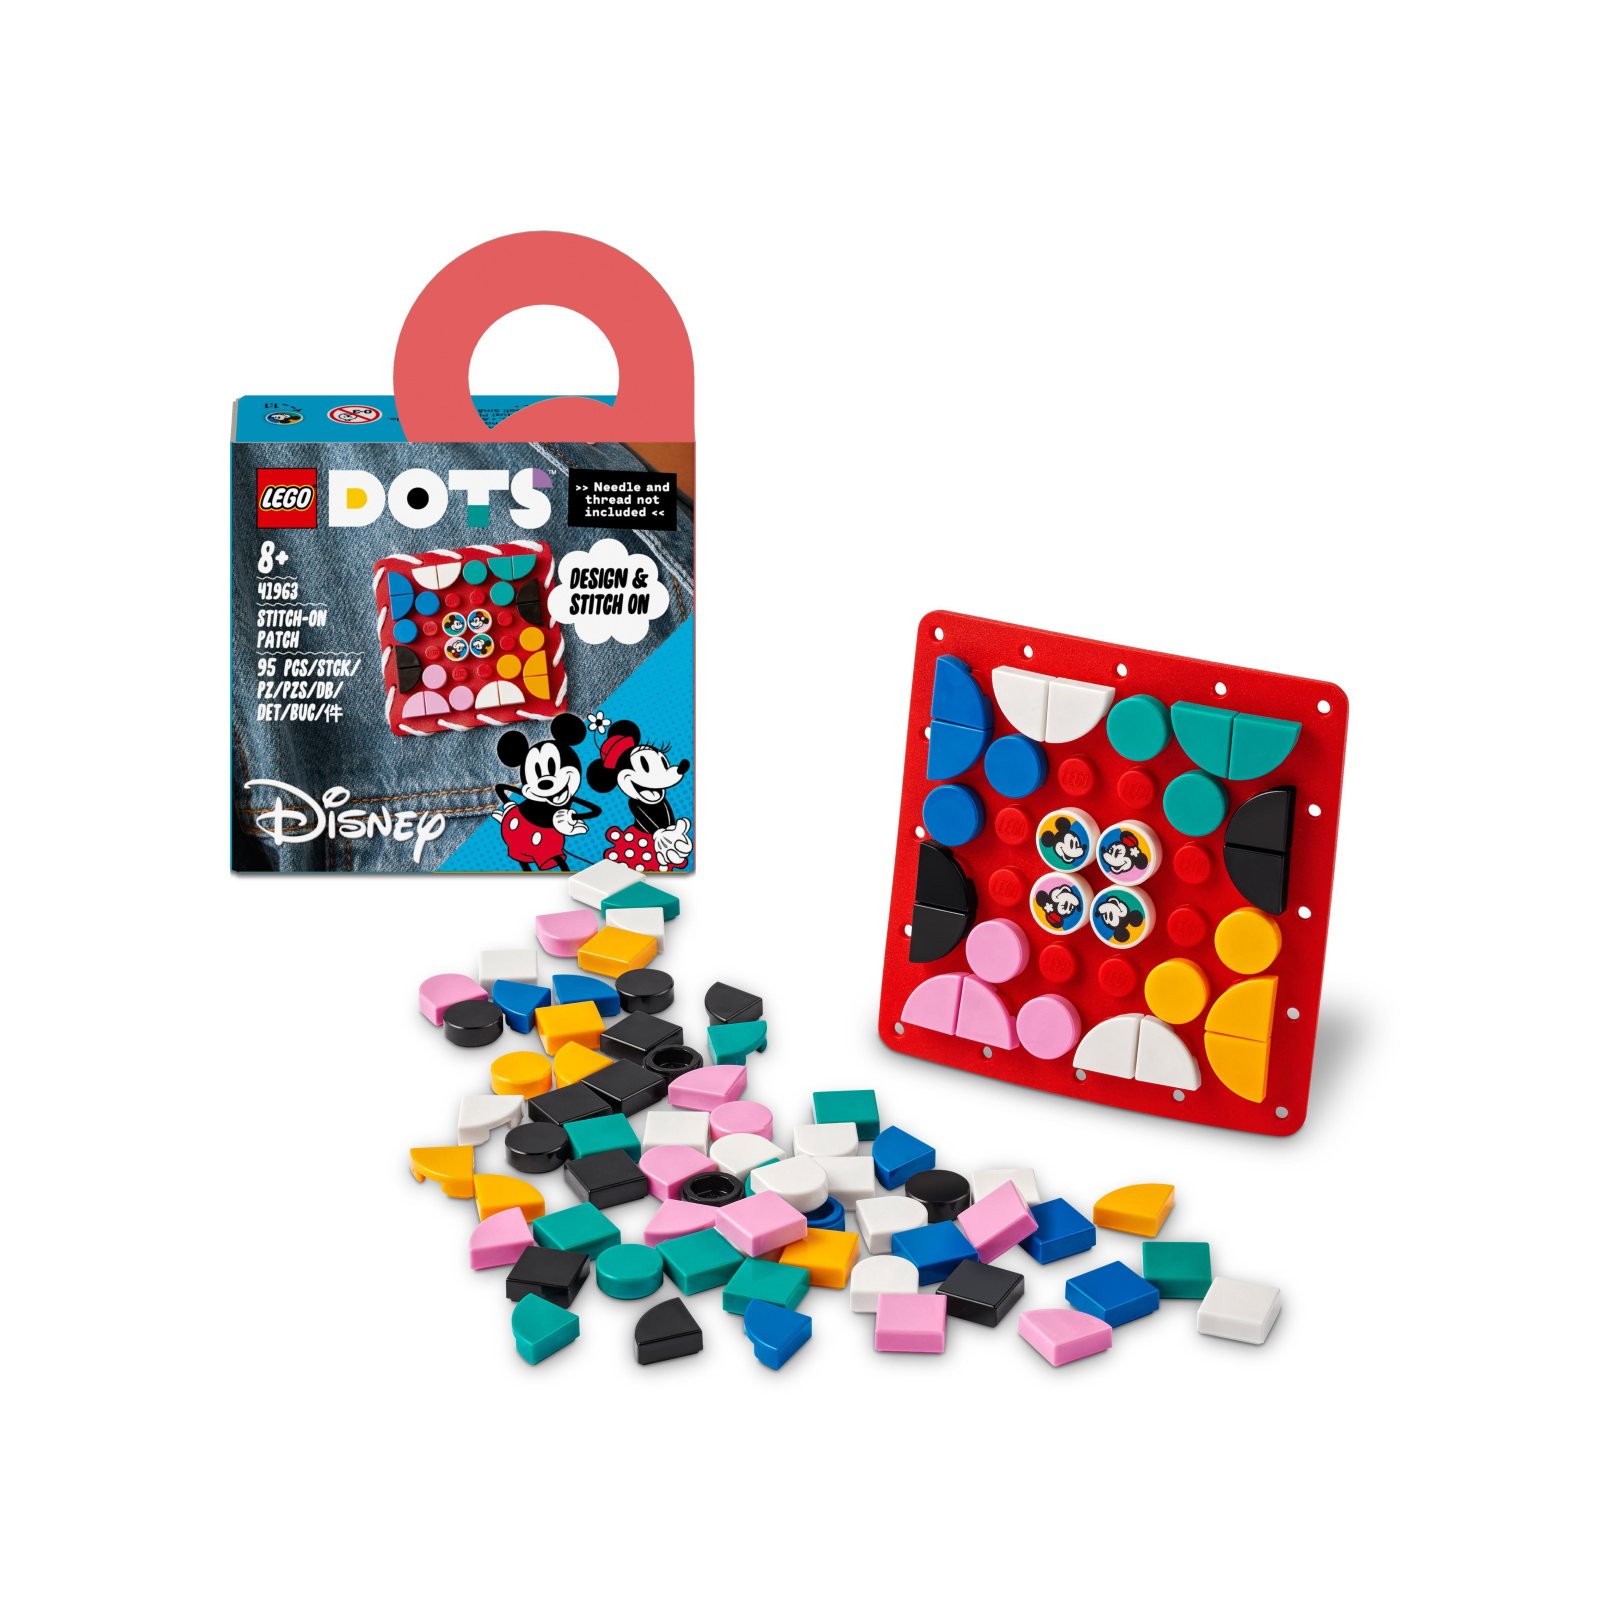 Lego dots 41963 disney patch stitch-on topolino e minnie, kit fai da te, toppa da cucire per decorare vestiti o accessori - DOTS, Minnie